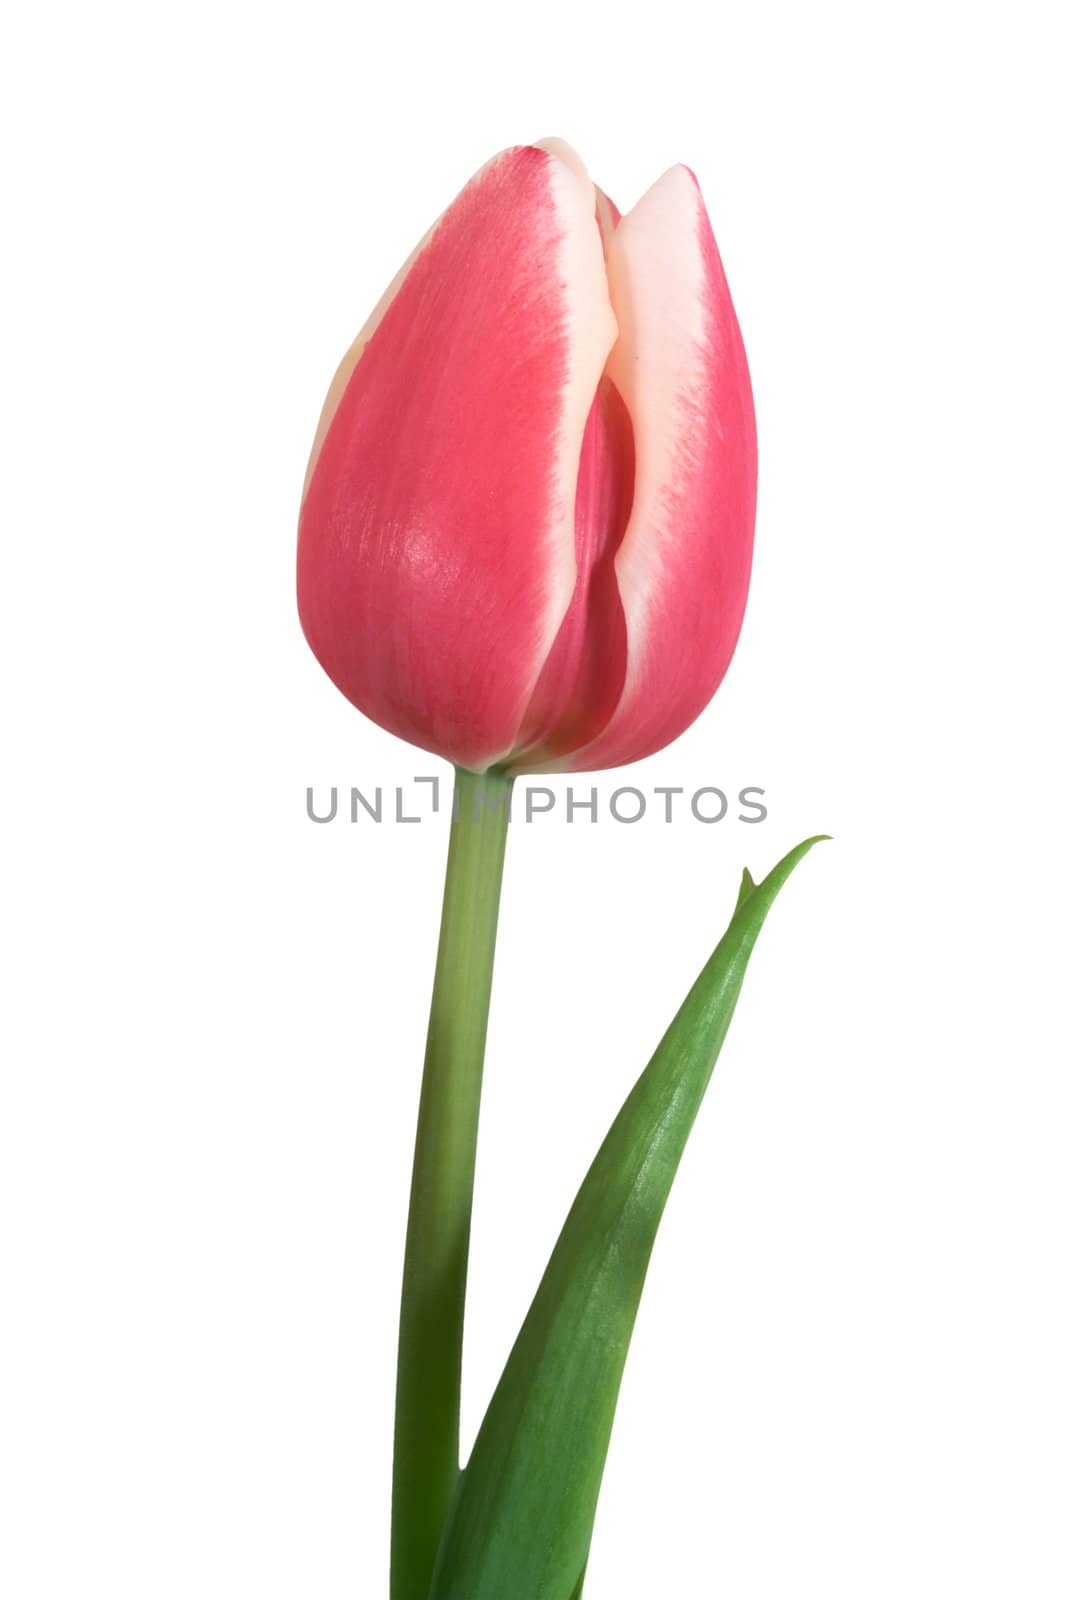 Tulip by sbonk